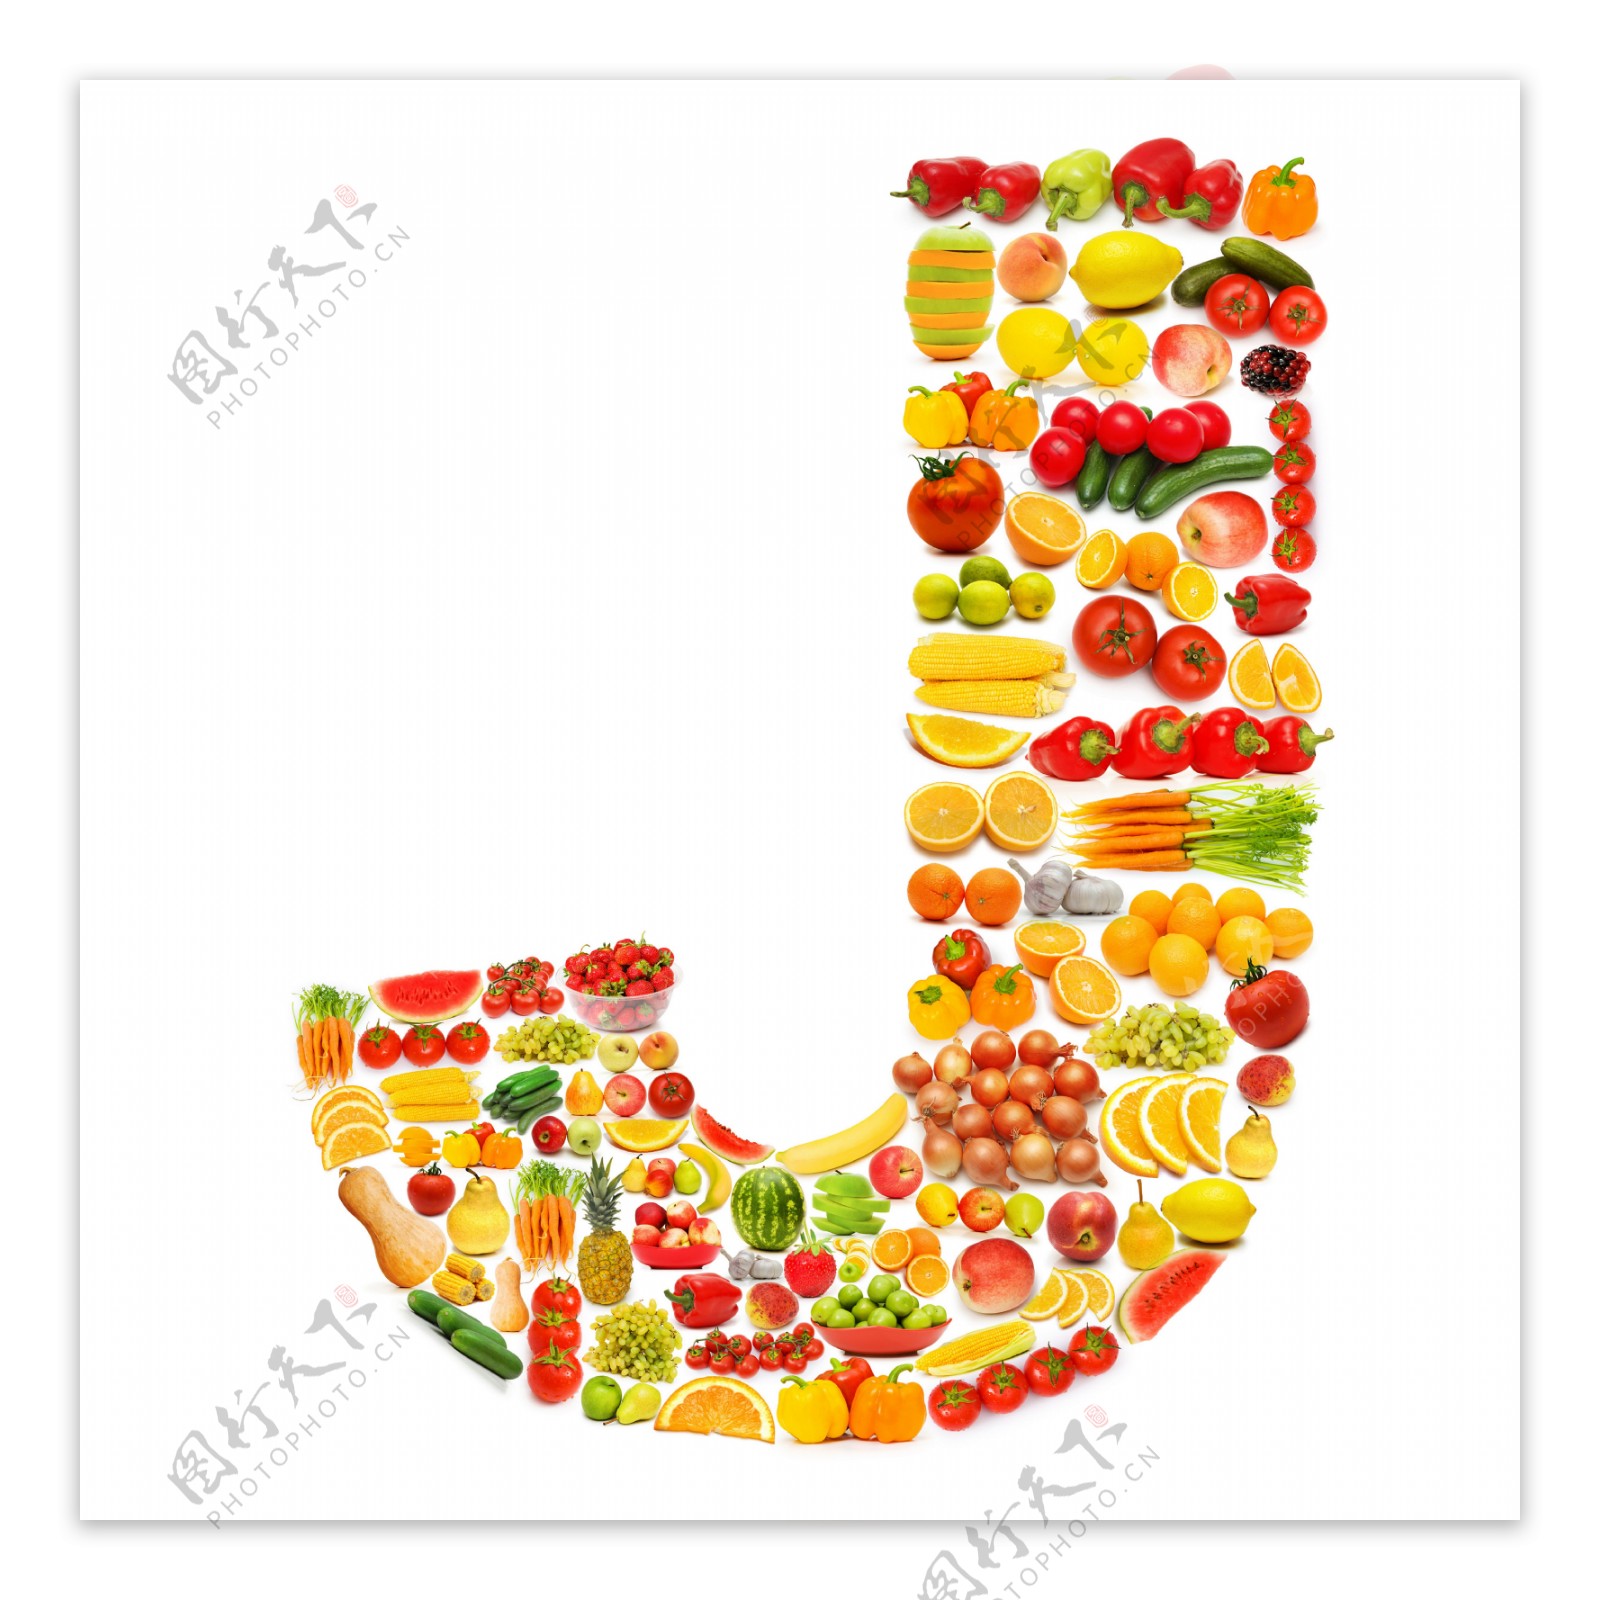 蔬菜水果组成的字母J图片